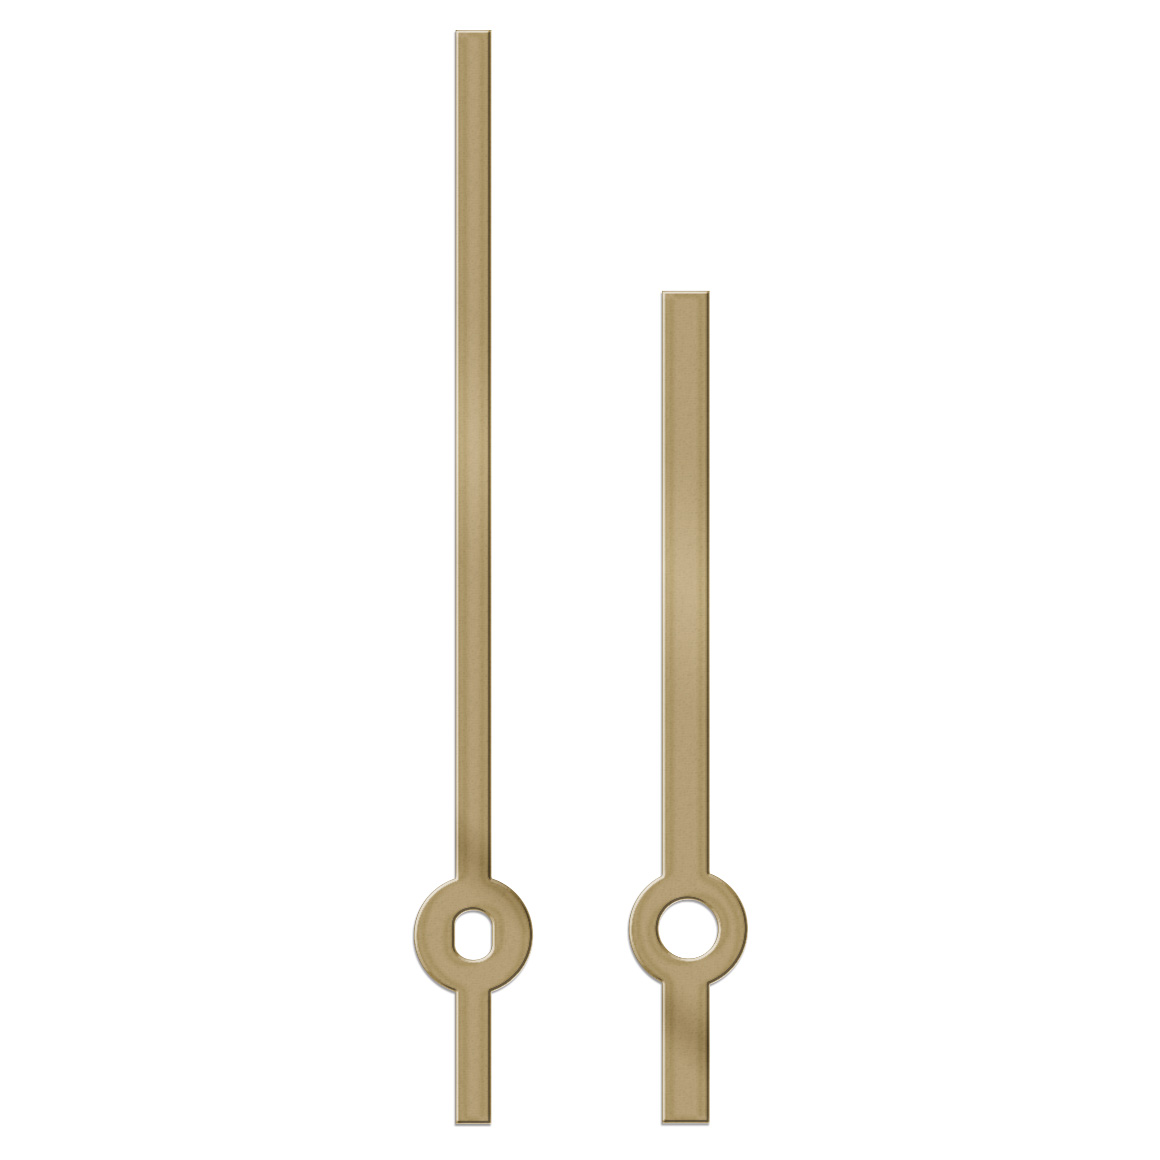 Paire d'aiguilles, baton, longueur 67 mm,
aluminium, doré, pour grandes horloges